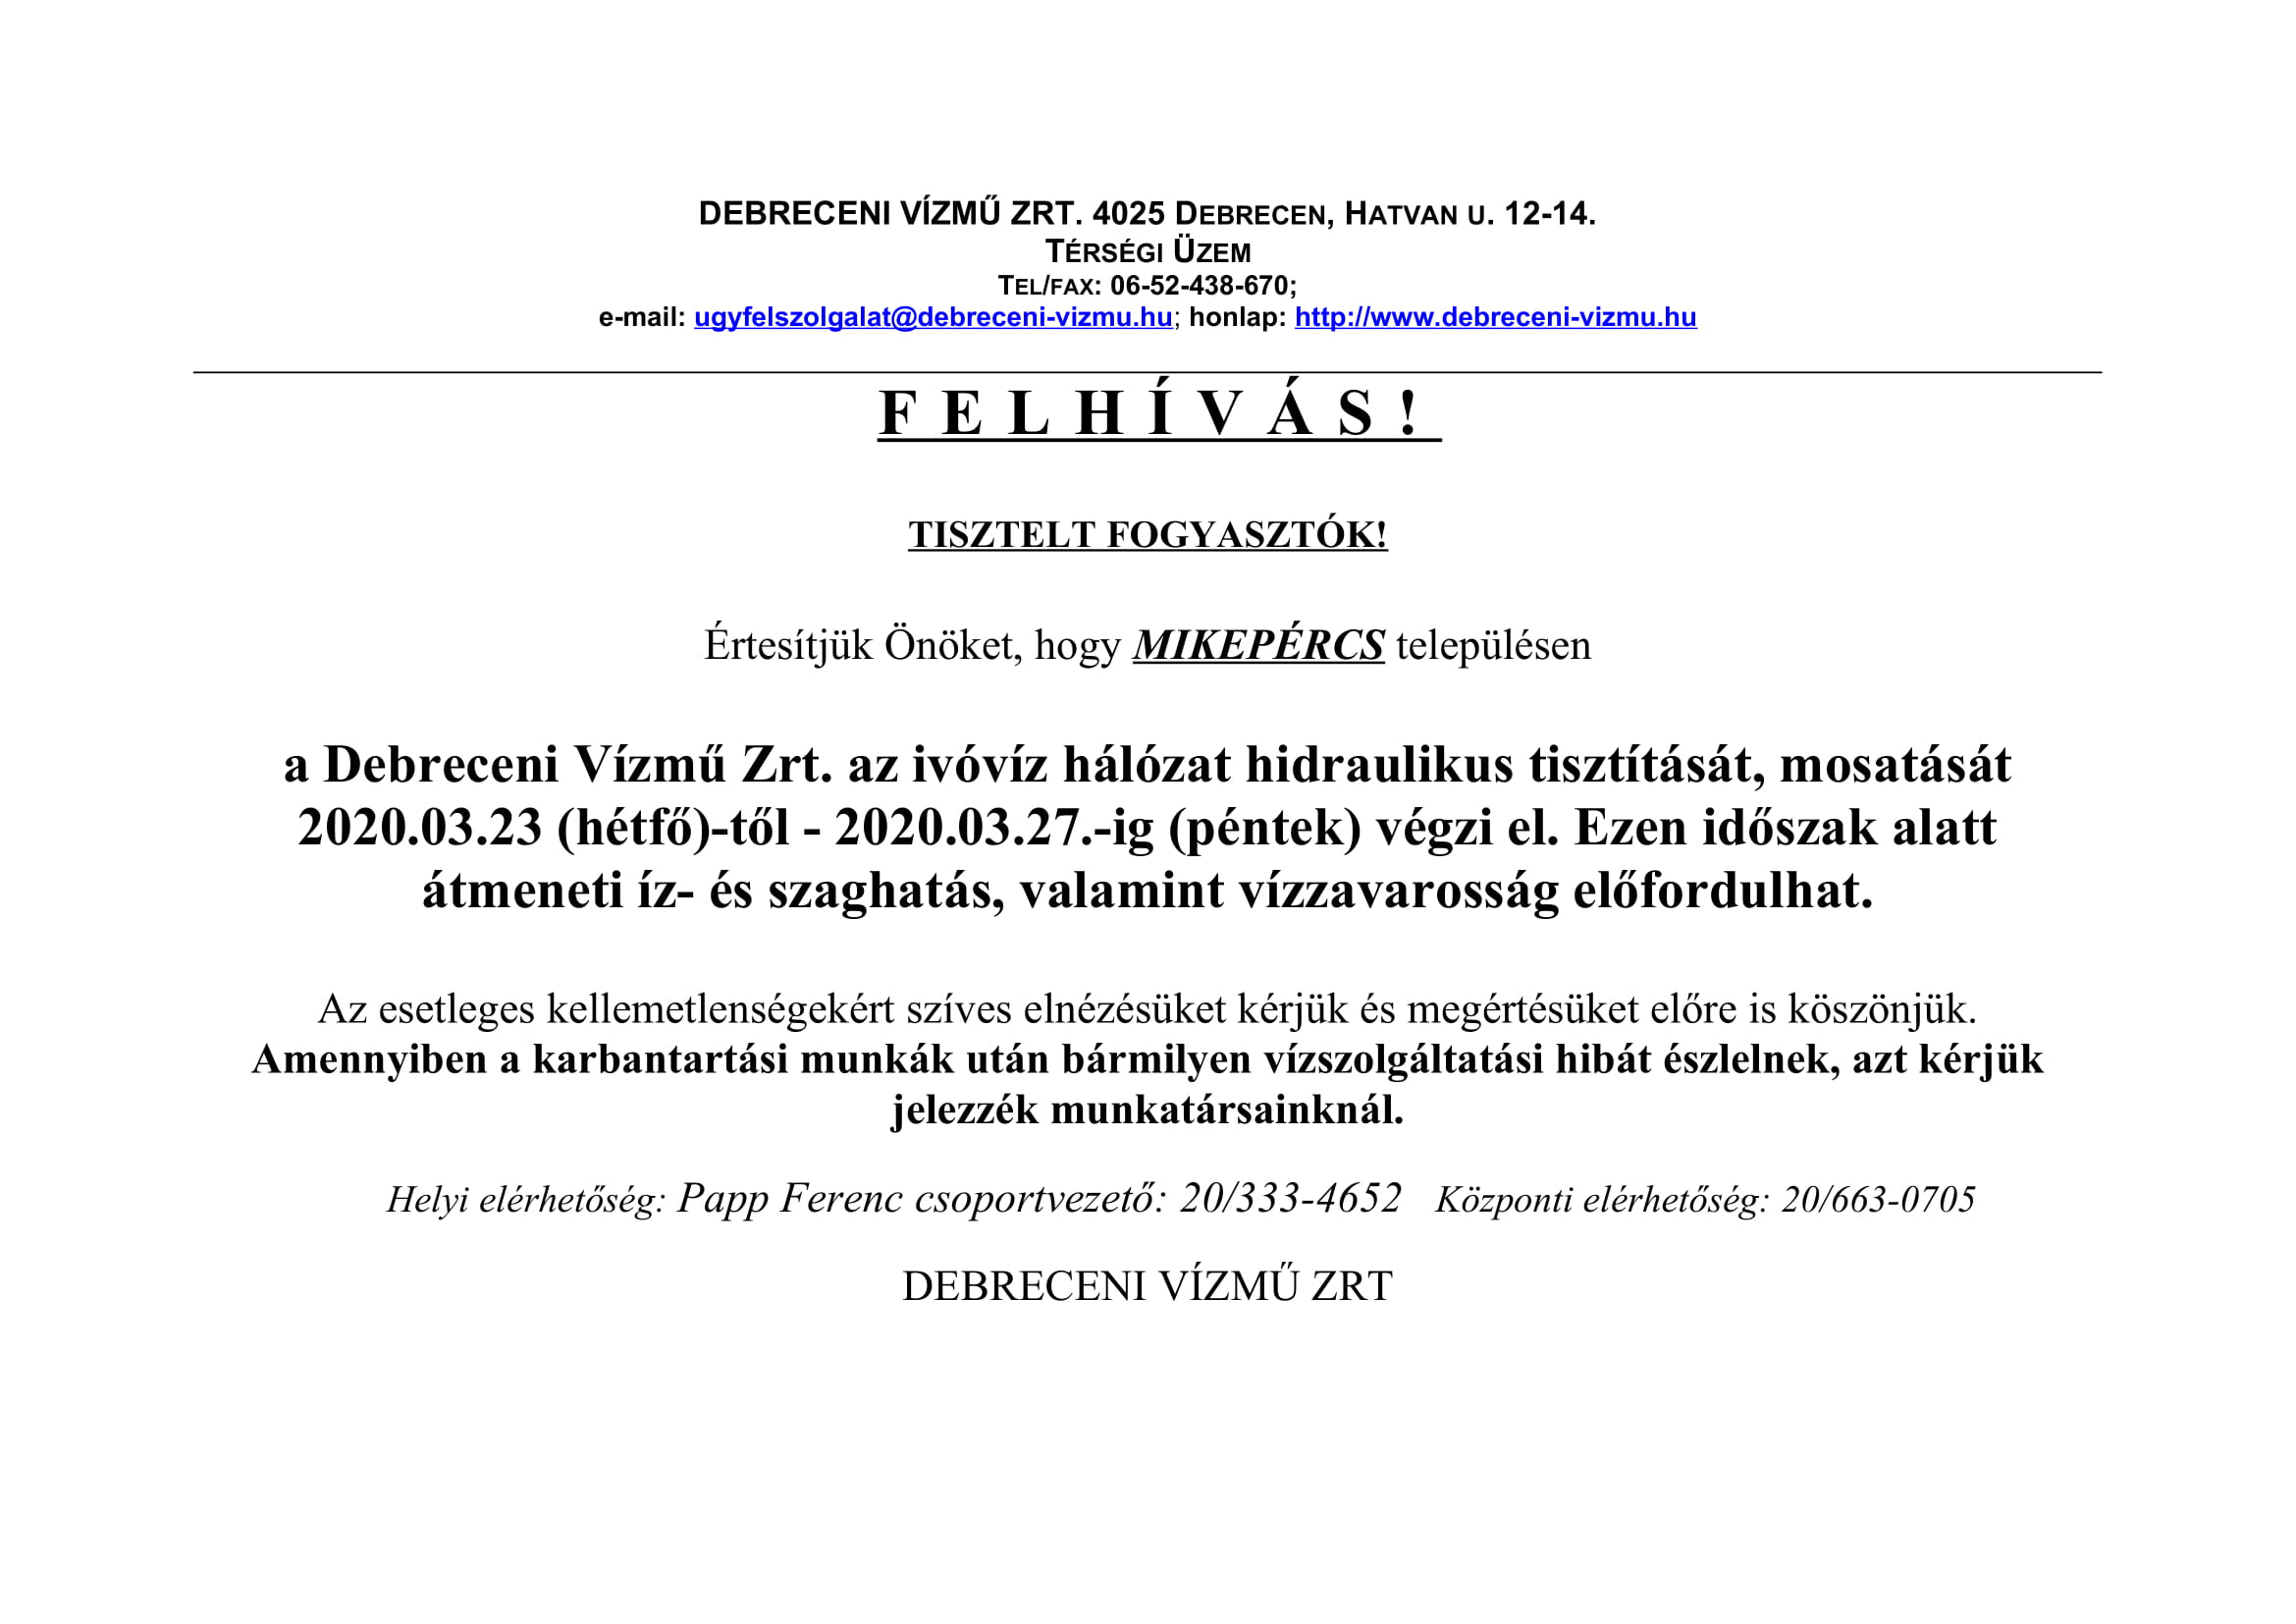 Debreceni Vízmű Zrt. tájékoztatóját tesszük közzé a mosatási és tisztítási munkáikról